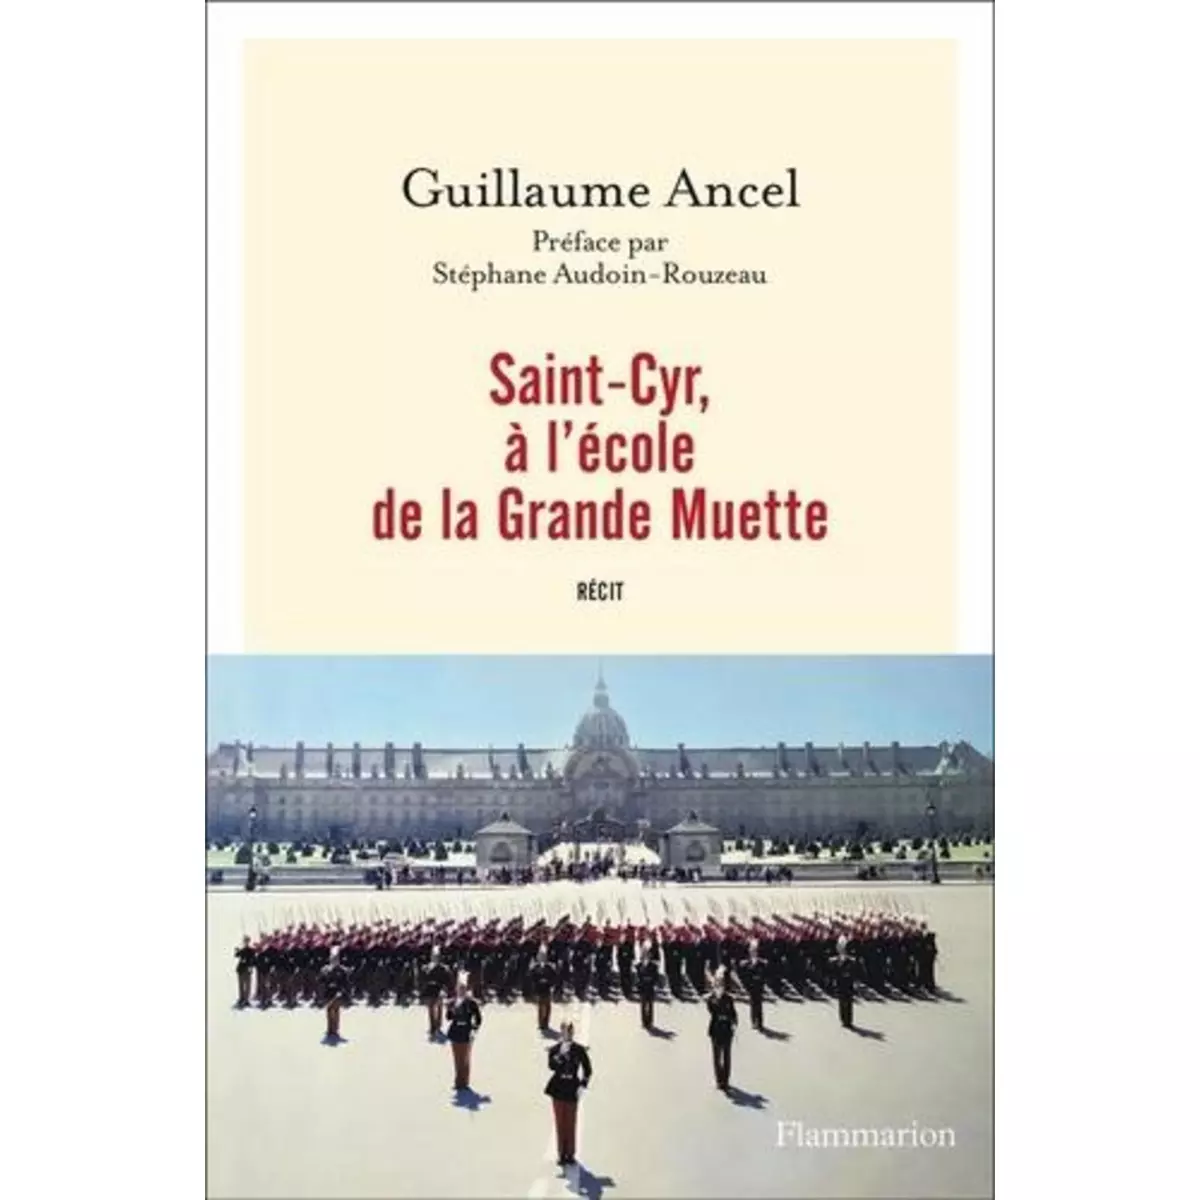  SAINT-CYR, A L'ECOLE DE LA GRANDE MUETTE, Ancel Guillaume